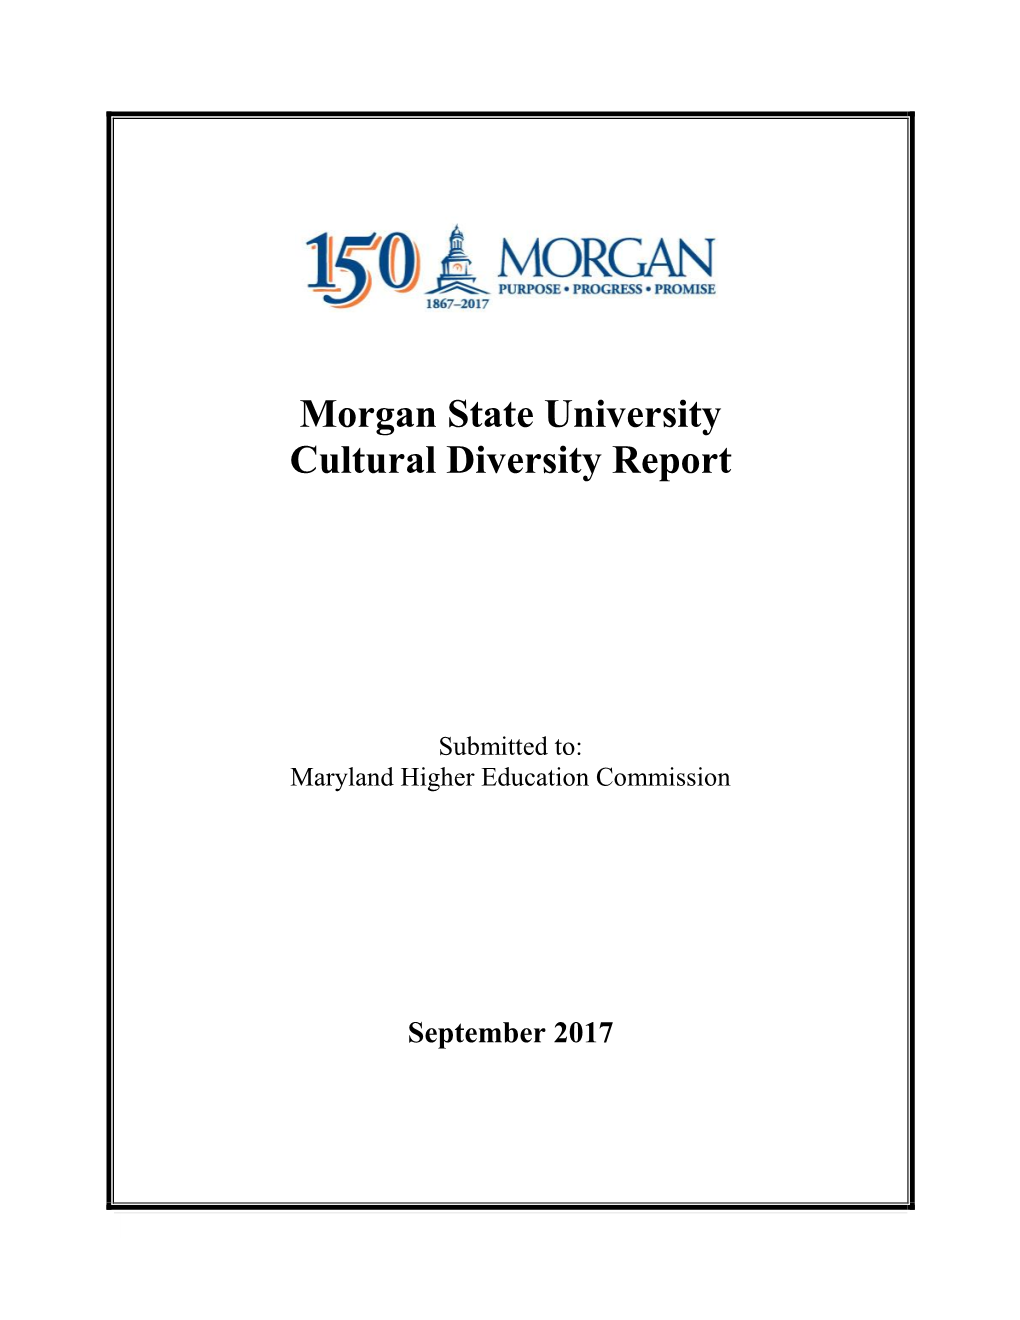 Morgan State University Cultural Diversity Report